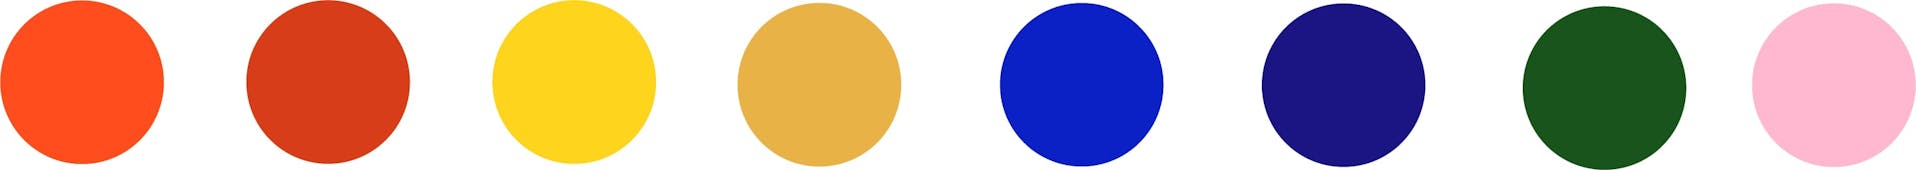 Palette graphique et colorimétrique utilisée pour la création de l'identité visuelle de la ville de Loudéac.